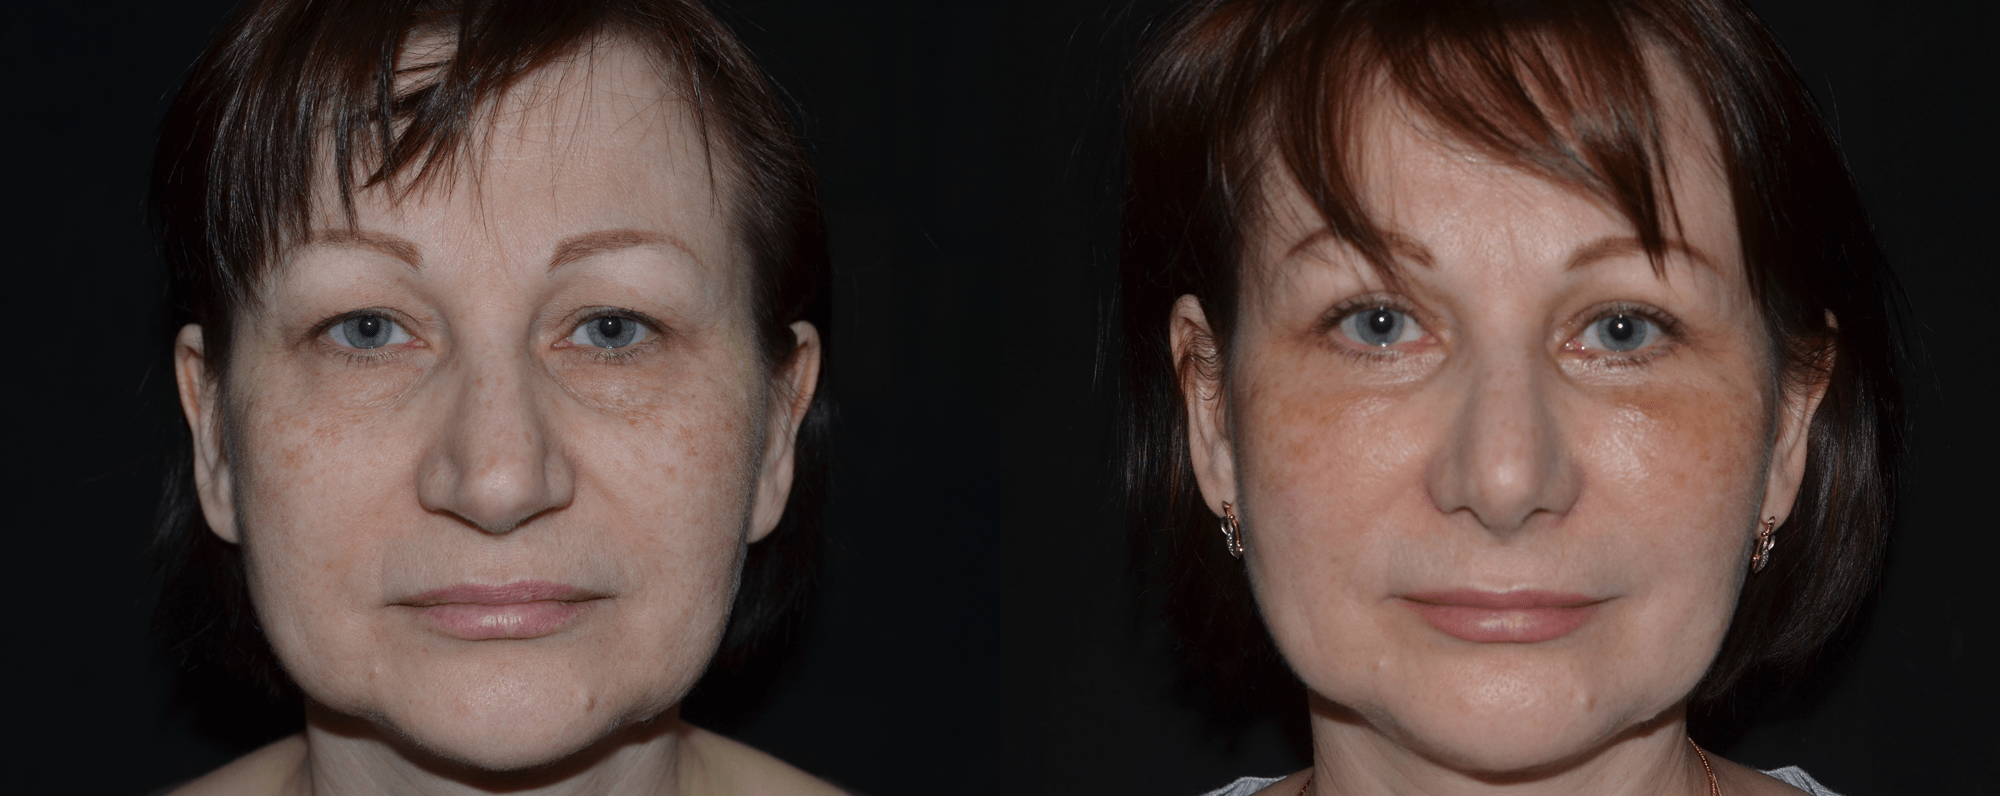 ринопластика носа до и после фото